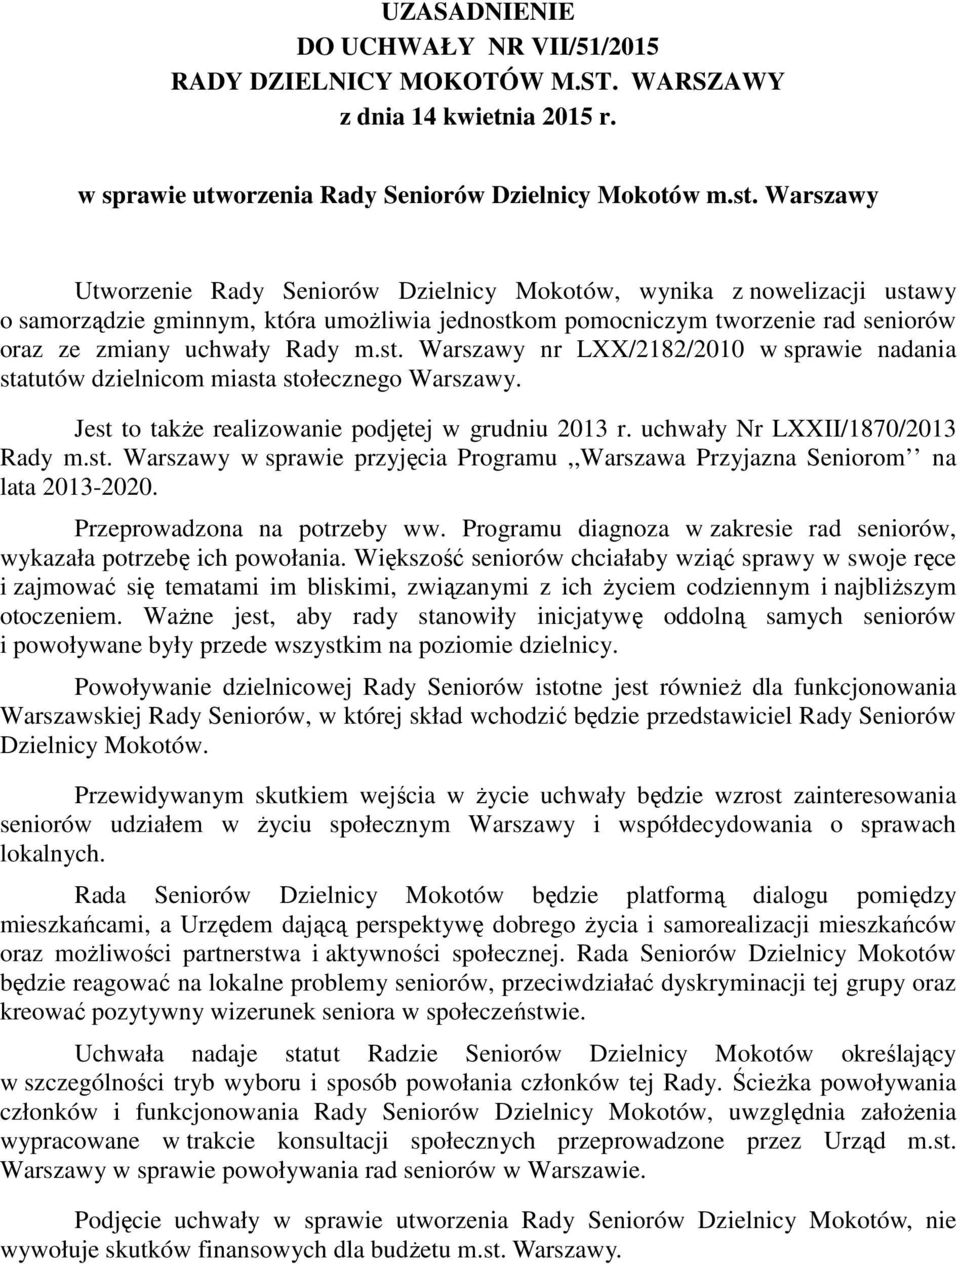 Jest to takŝe realizowanie podjętej w grudniu 2013 r. uchwały Nr LXXII/1870/2013 Rady m.st. Warszawy w sprawie przyjęcia Programu,,Warszawa Przyjazna Seniorom na lata 2013-2020.